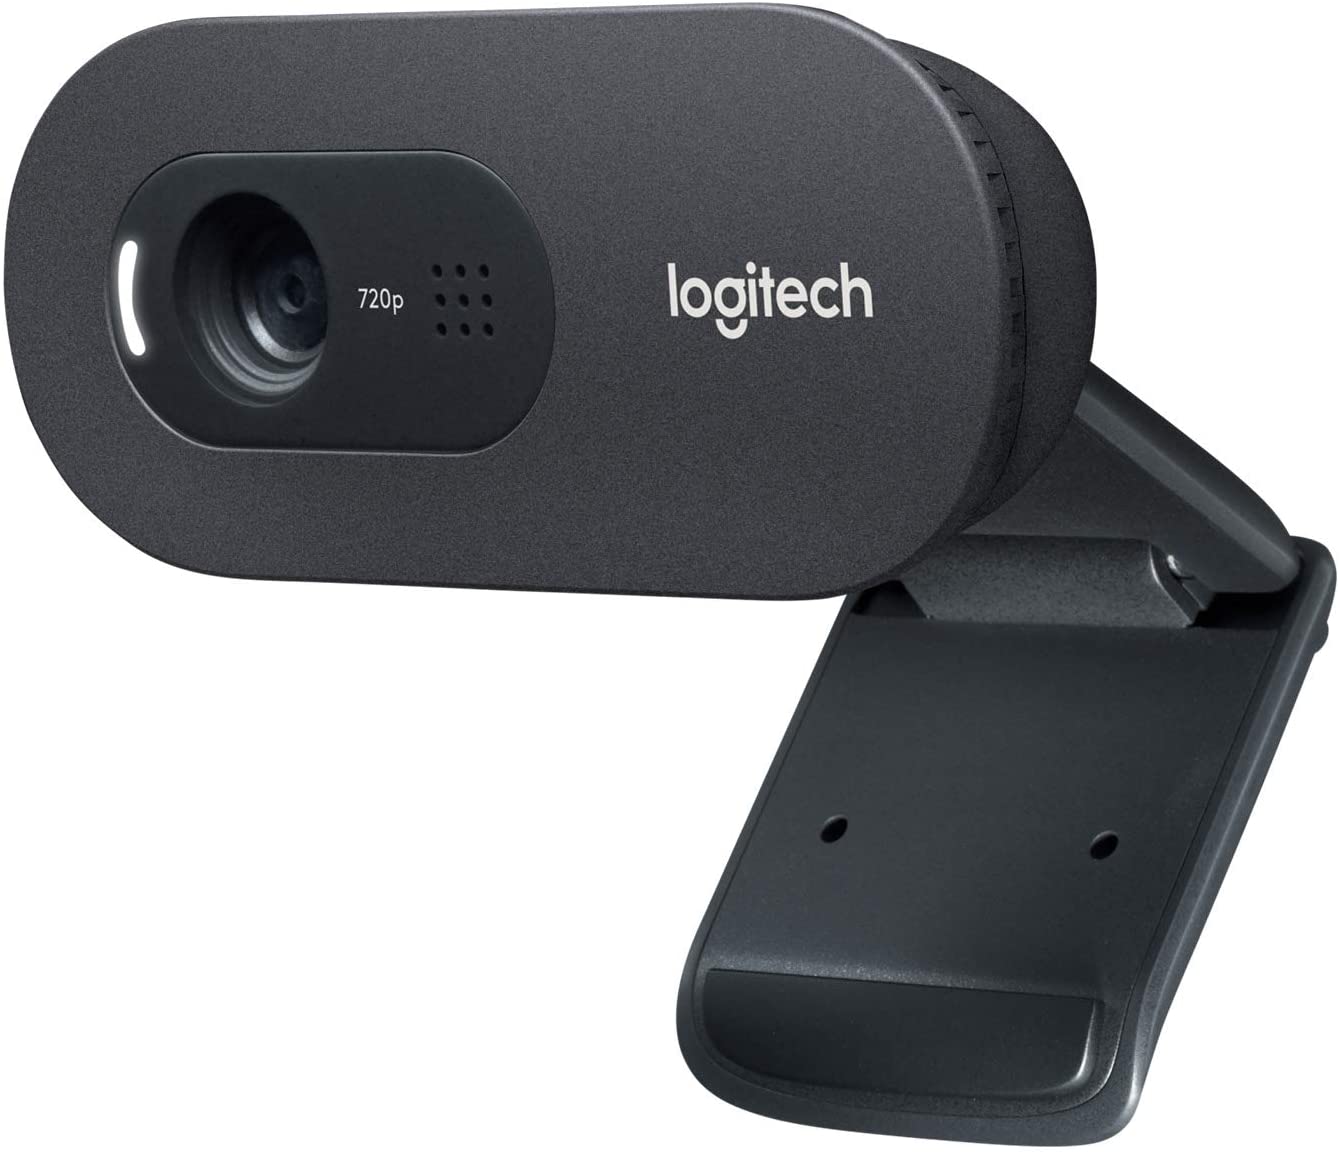 WebCam Logitech C270 HD com 3 MP para Chamadas e Gravações em Vídeo Widescreen 720p